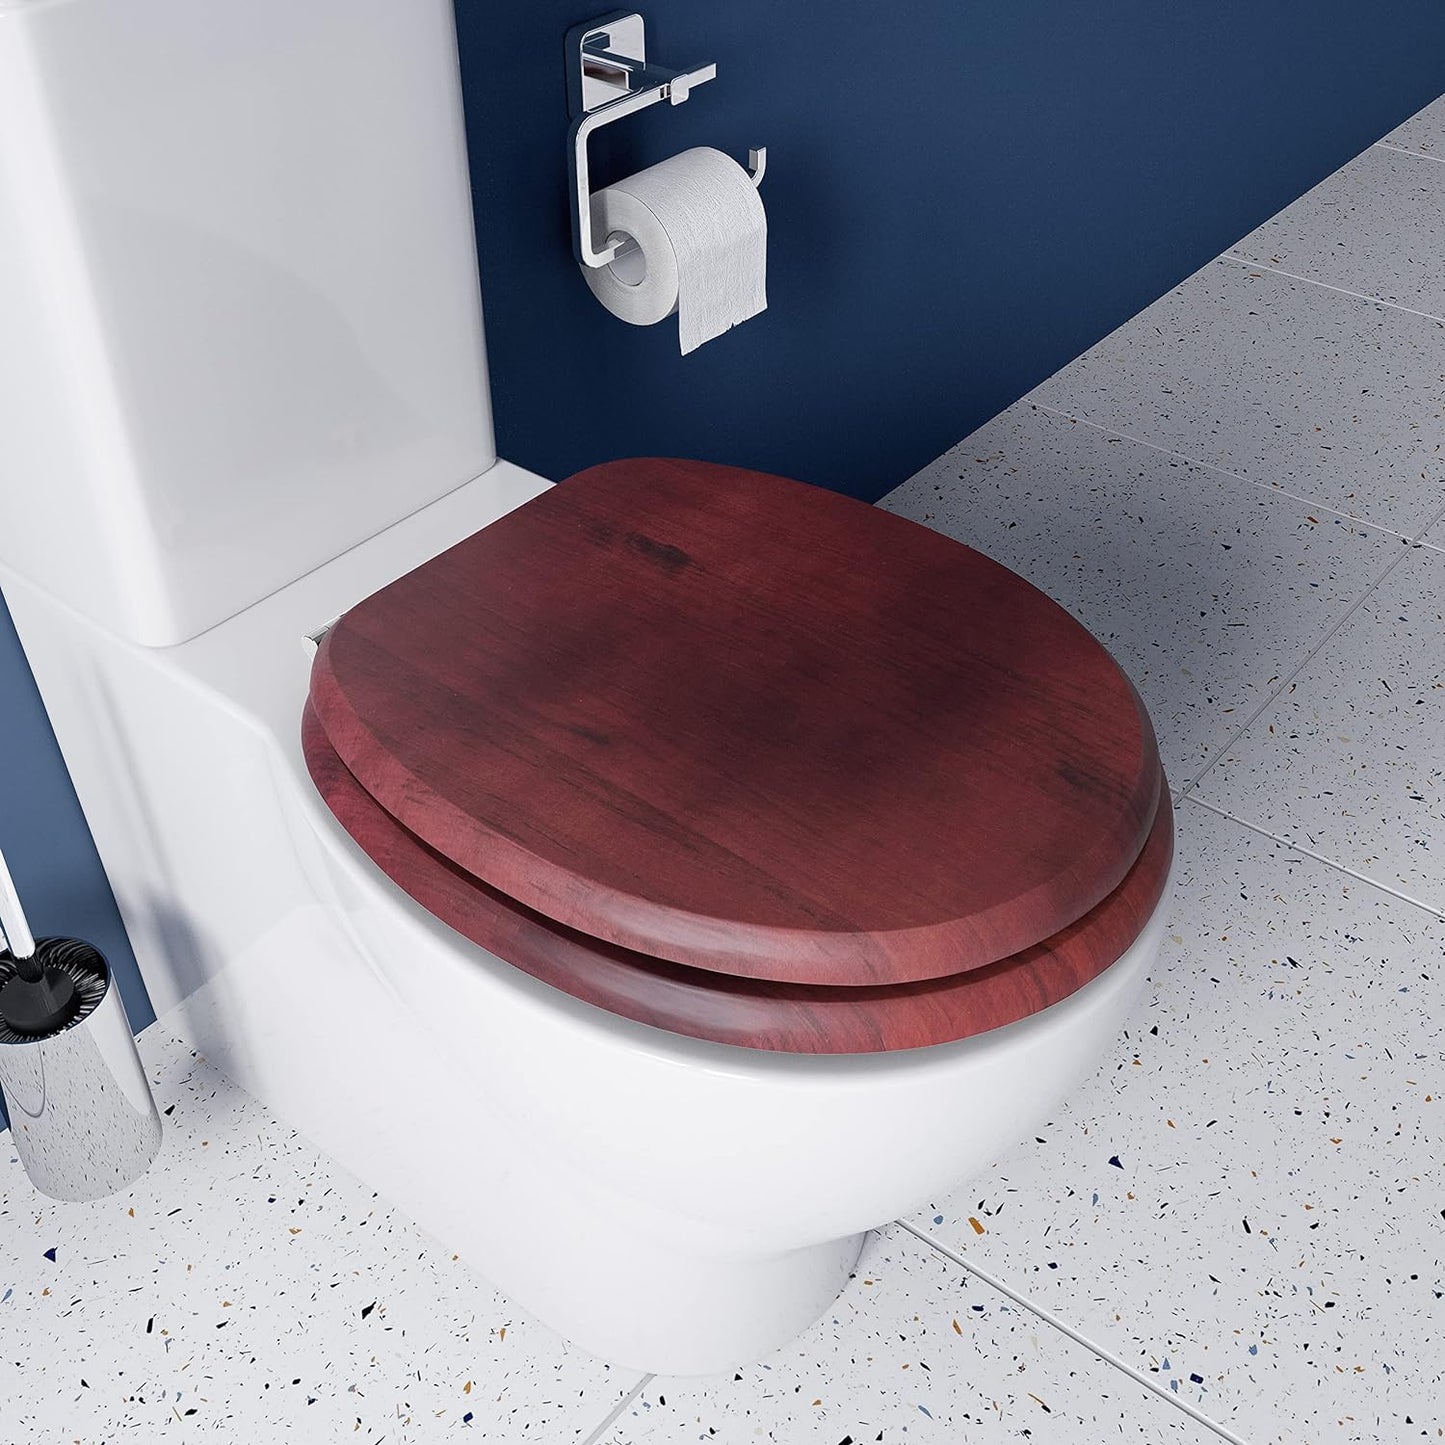 Mahogany & Chrome Toilet Seat